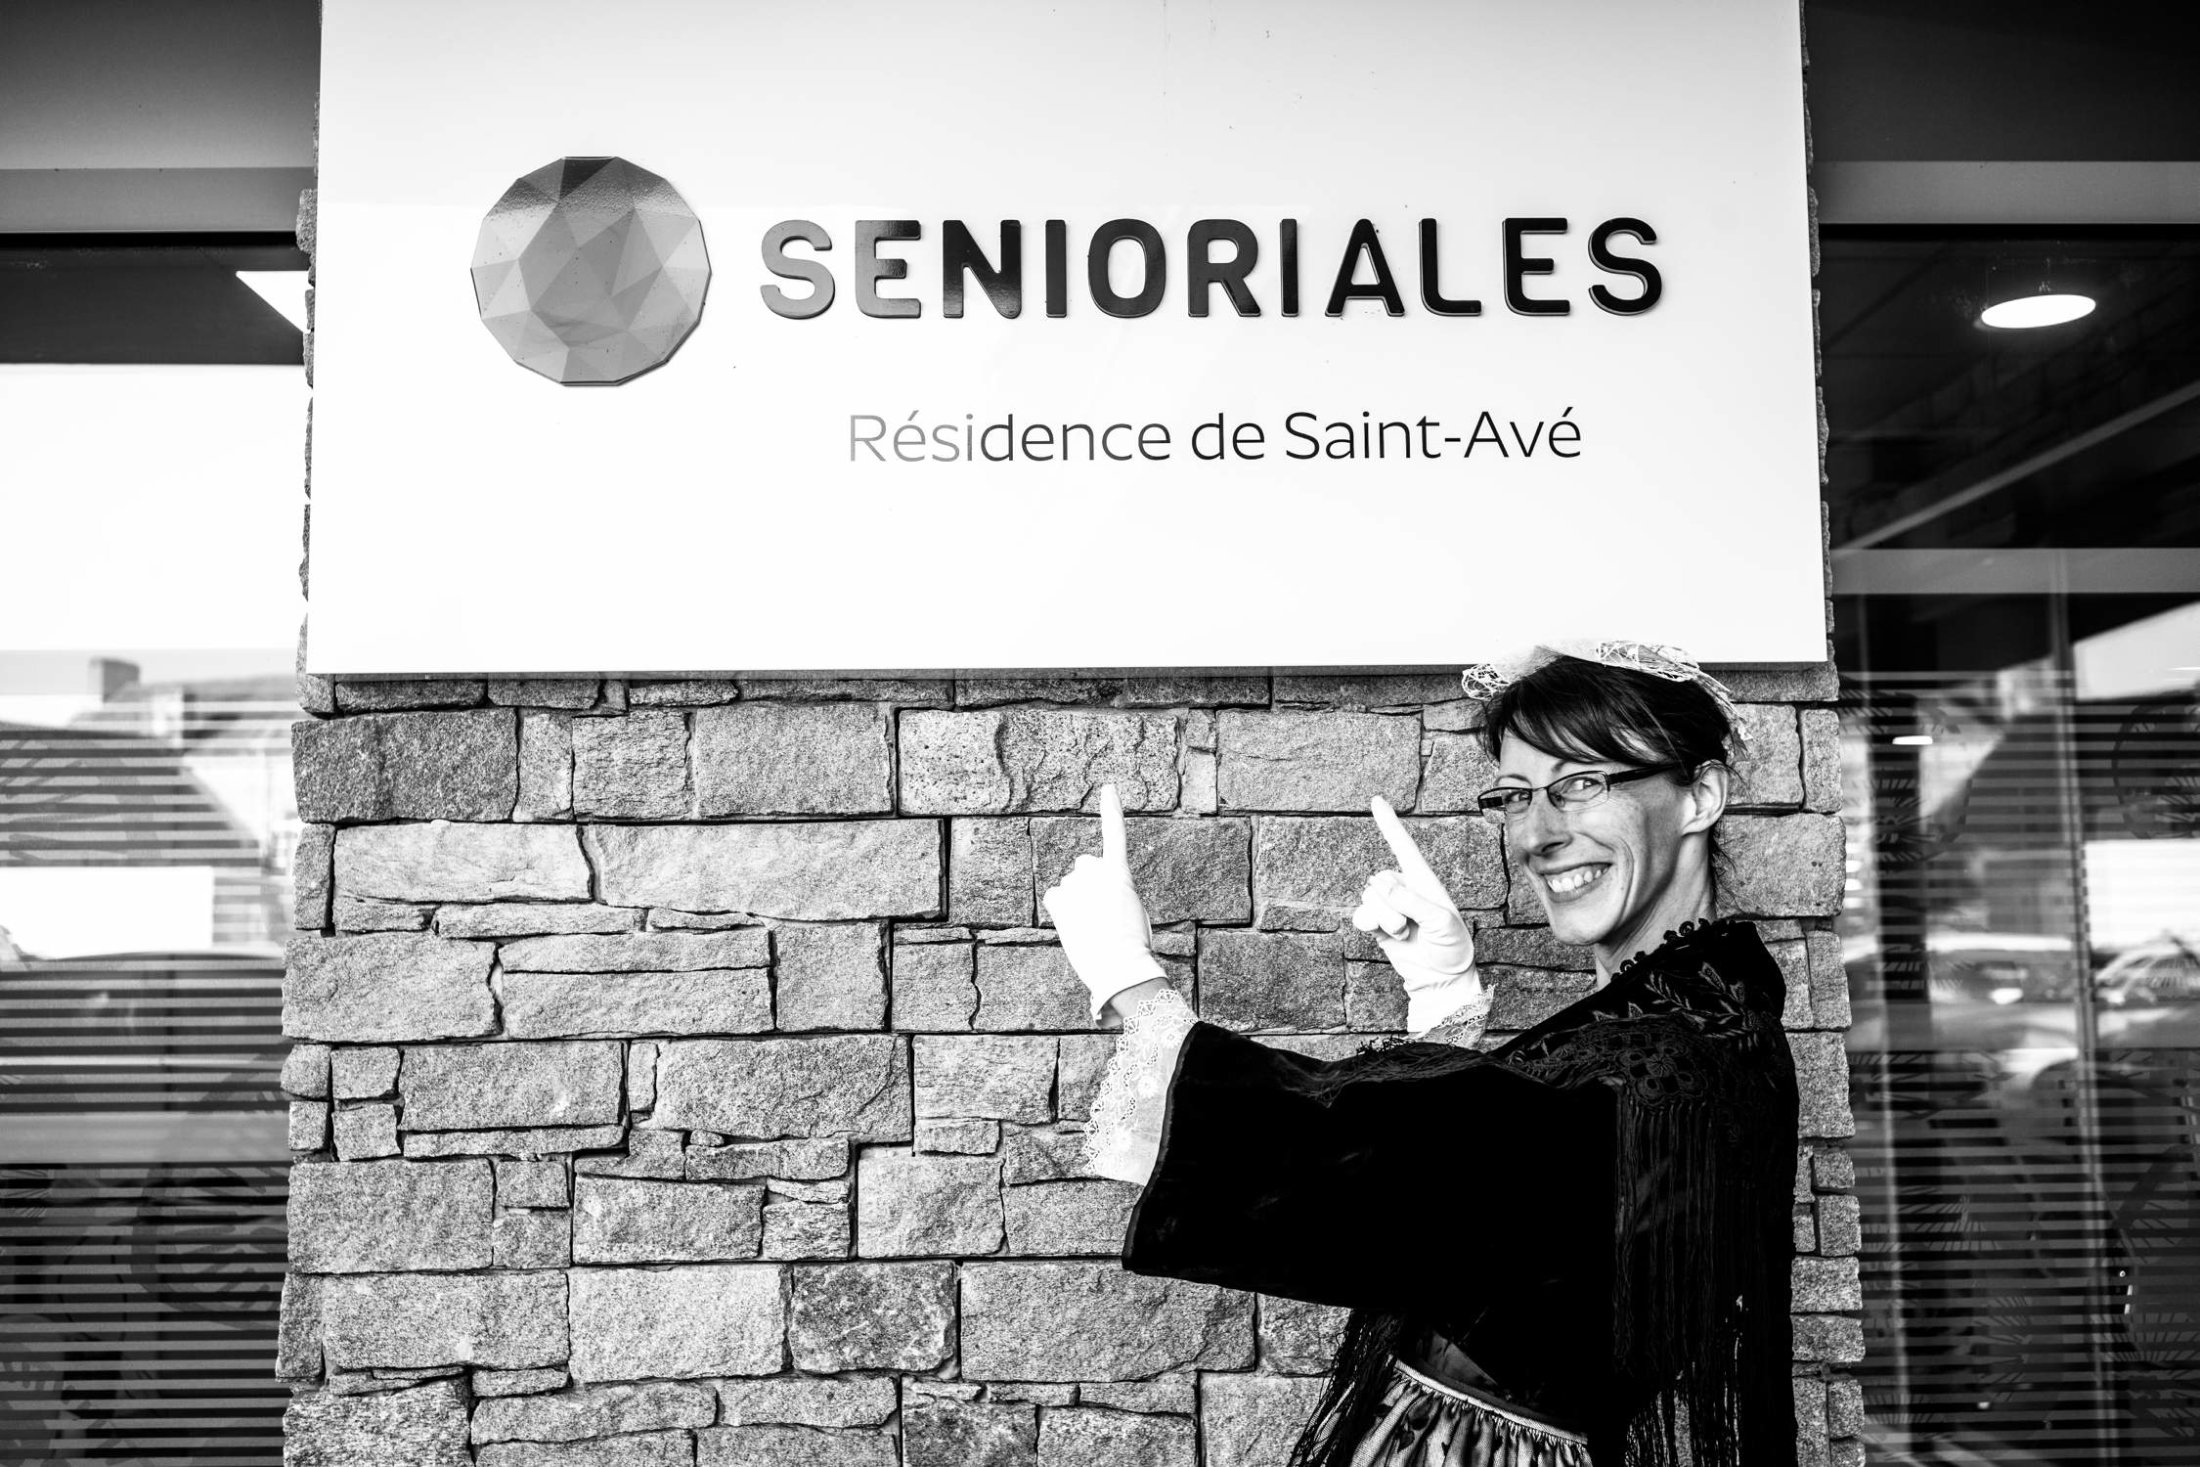 12 - Les Senioriales de Saint-Avé